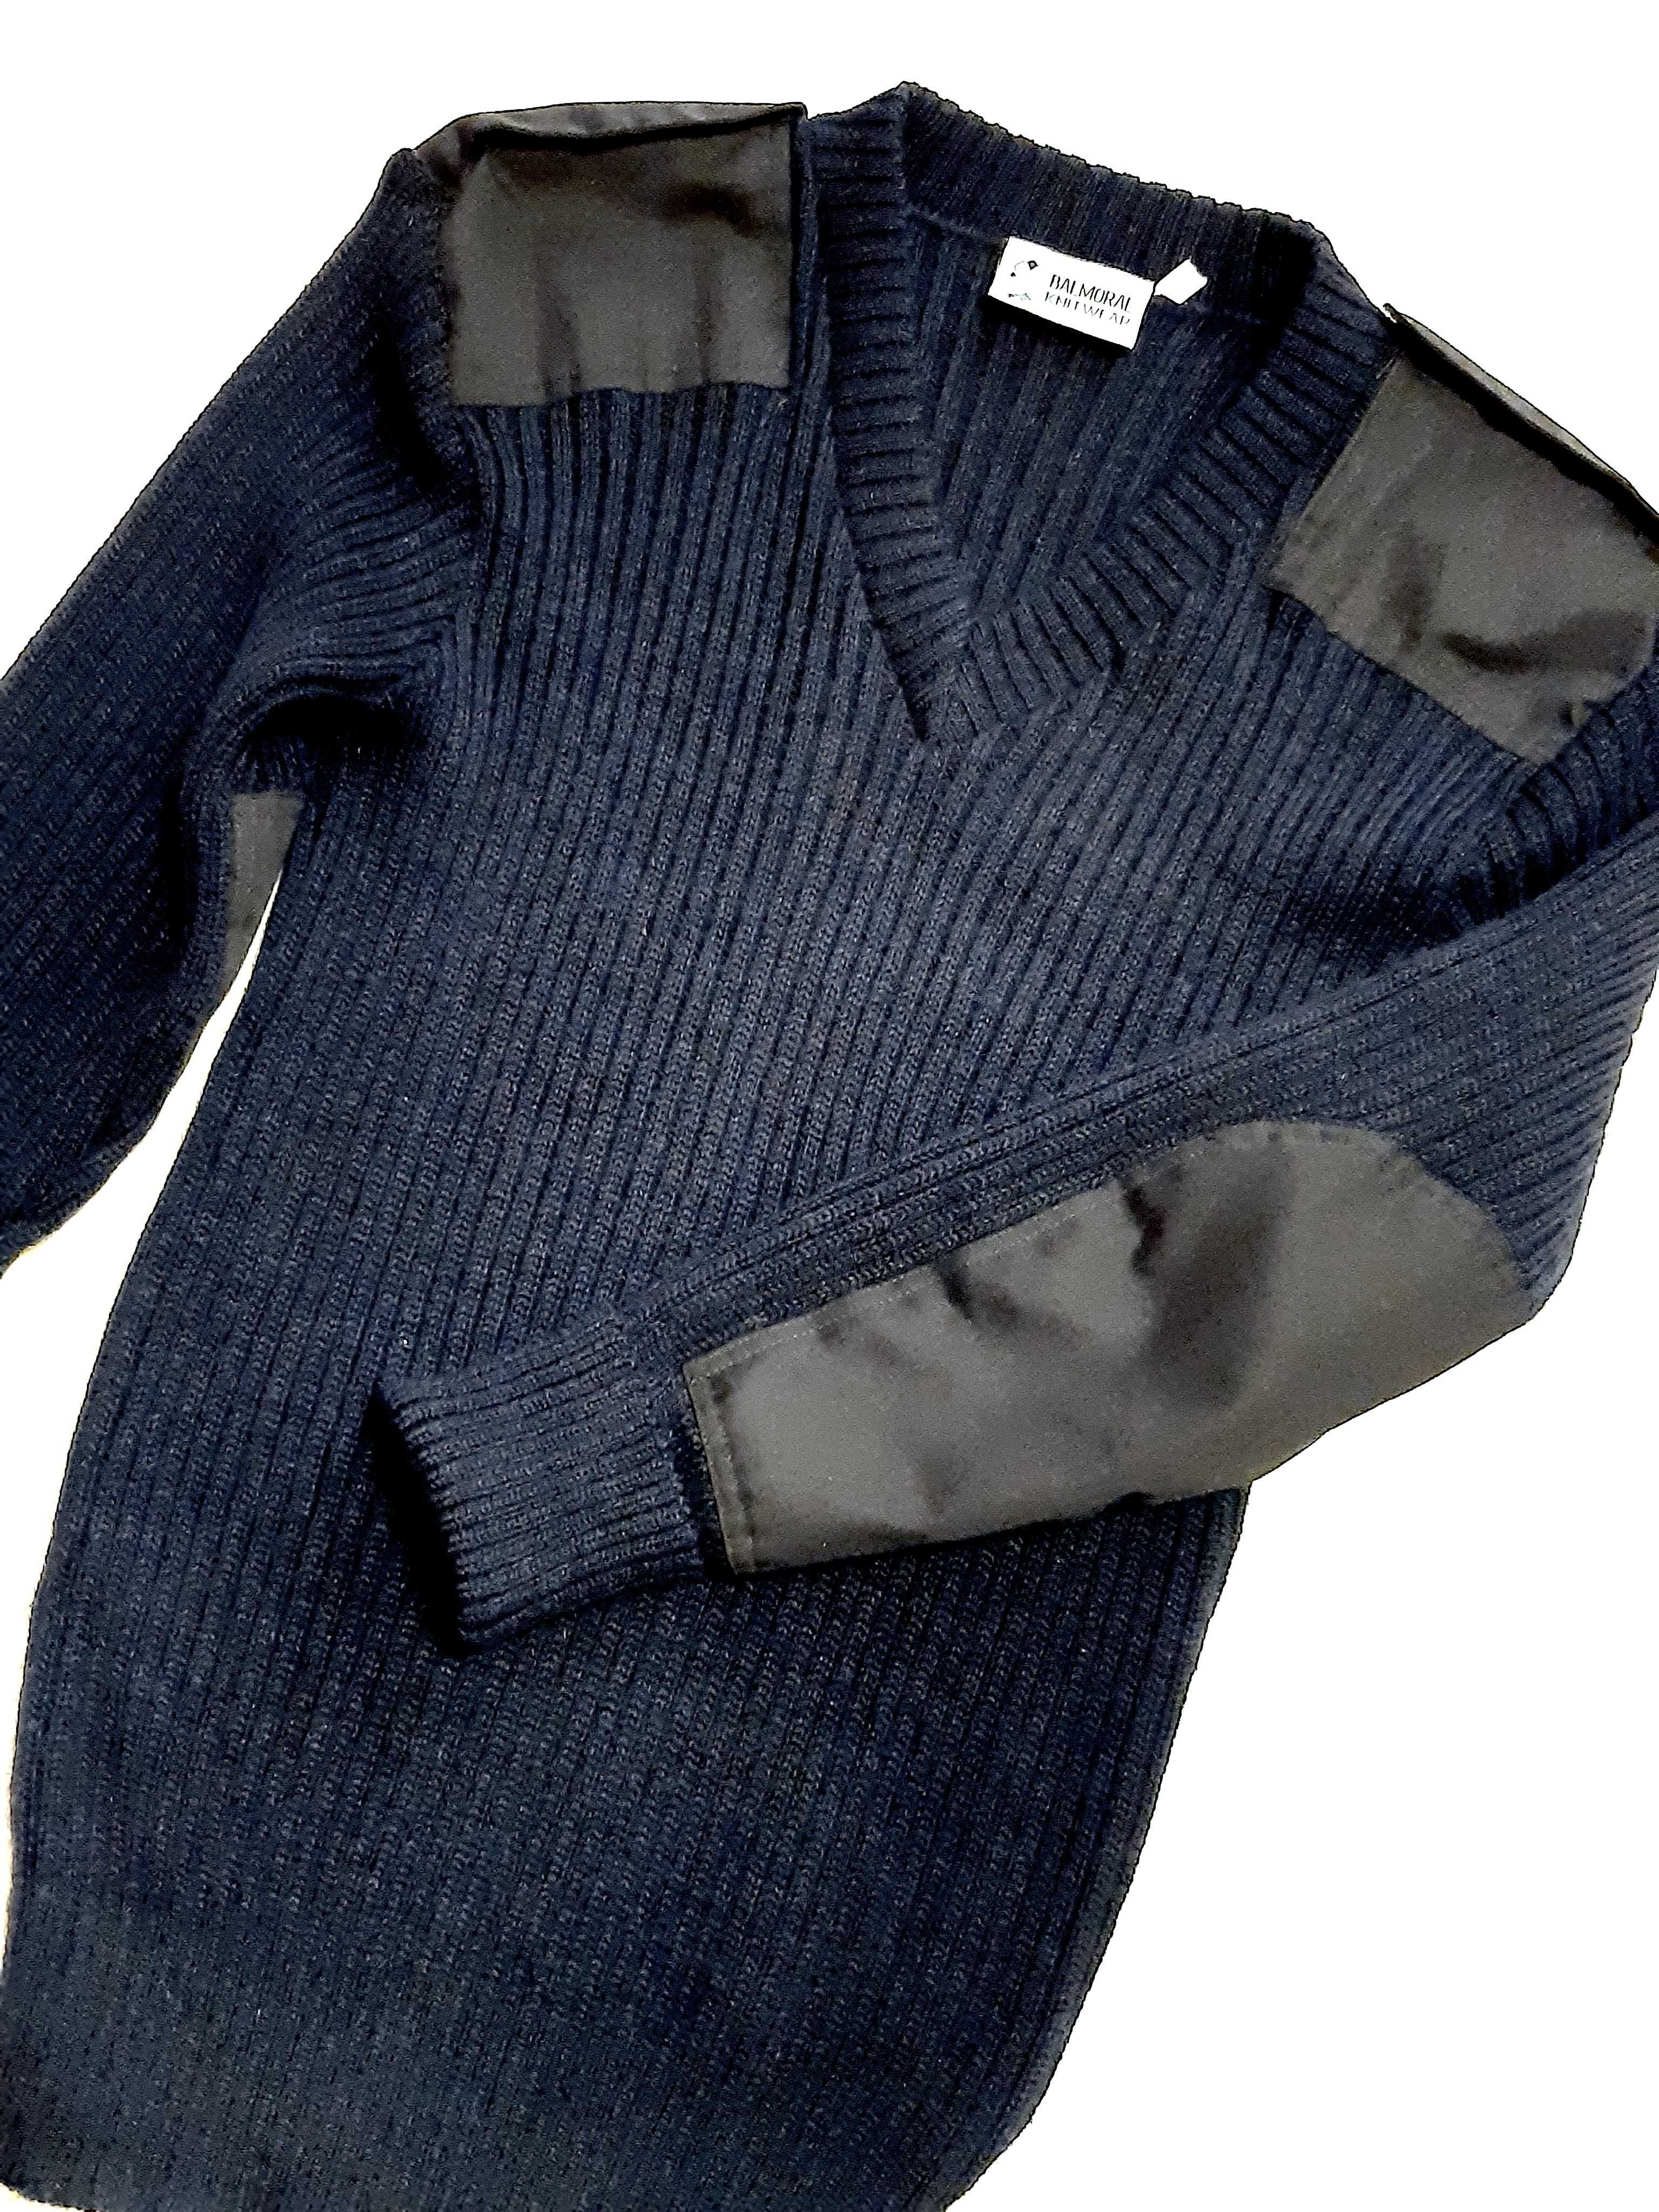 M-2XL Пуловер Balmoral,100% шерсть, мужской свитер, Шотландия